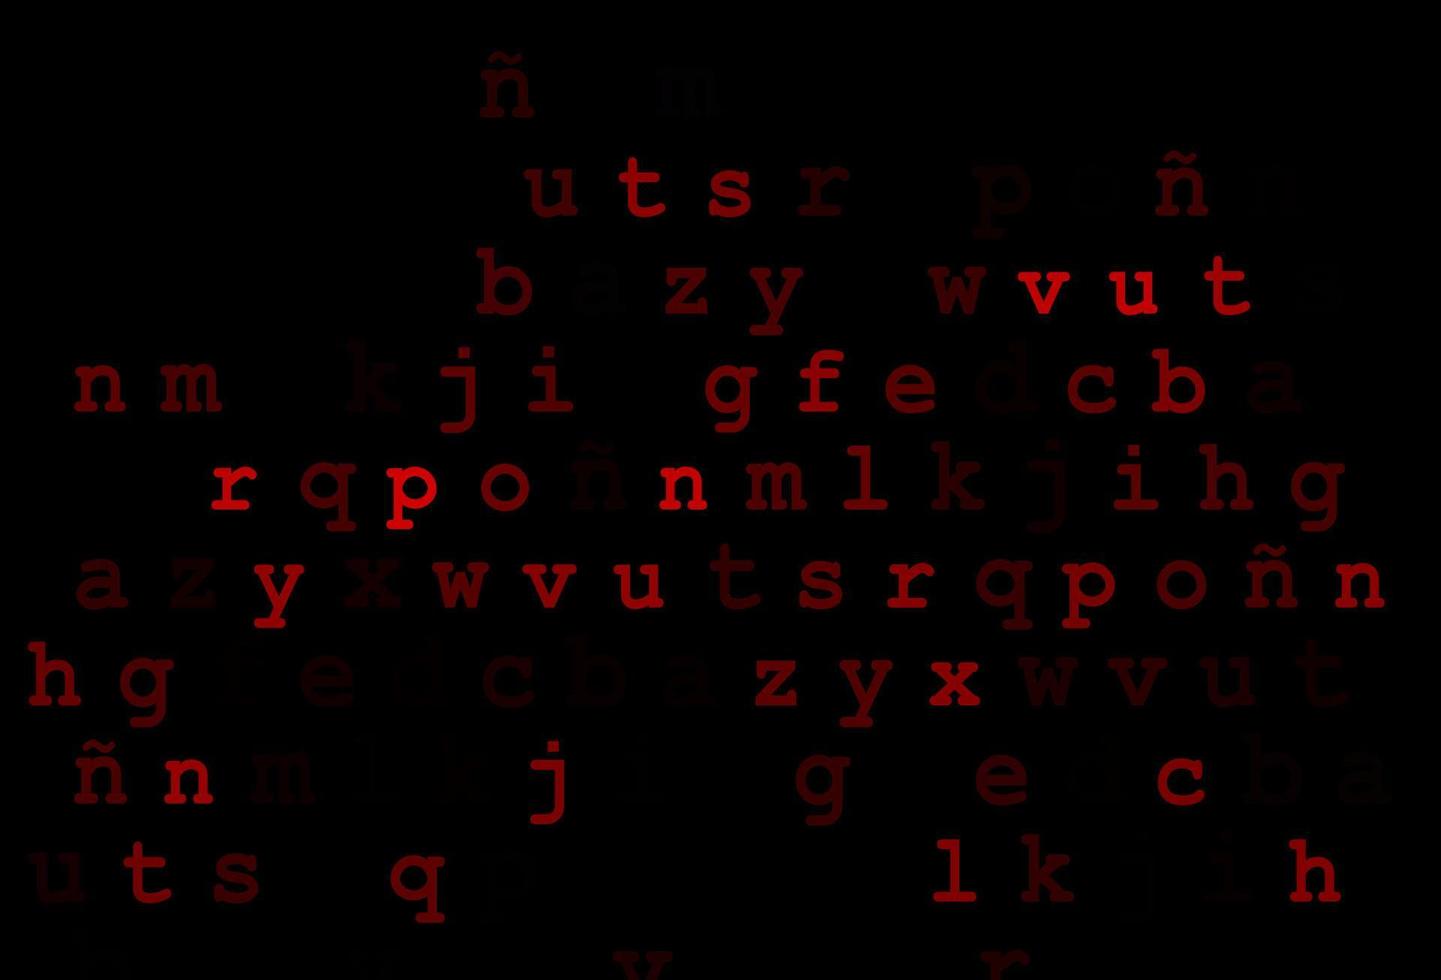 cubierta de vector rojo oscuro con símbolos en inglés.